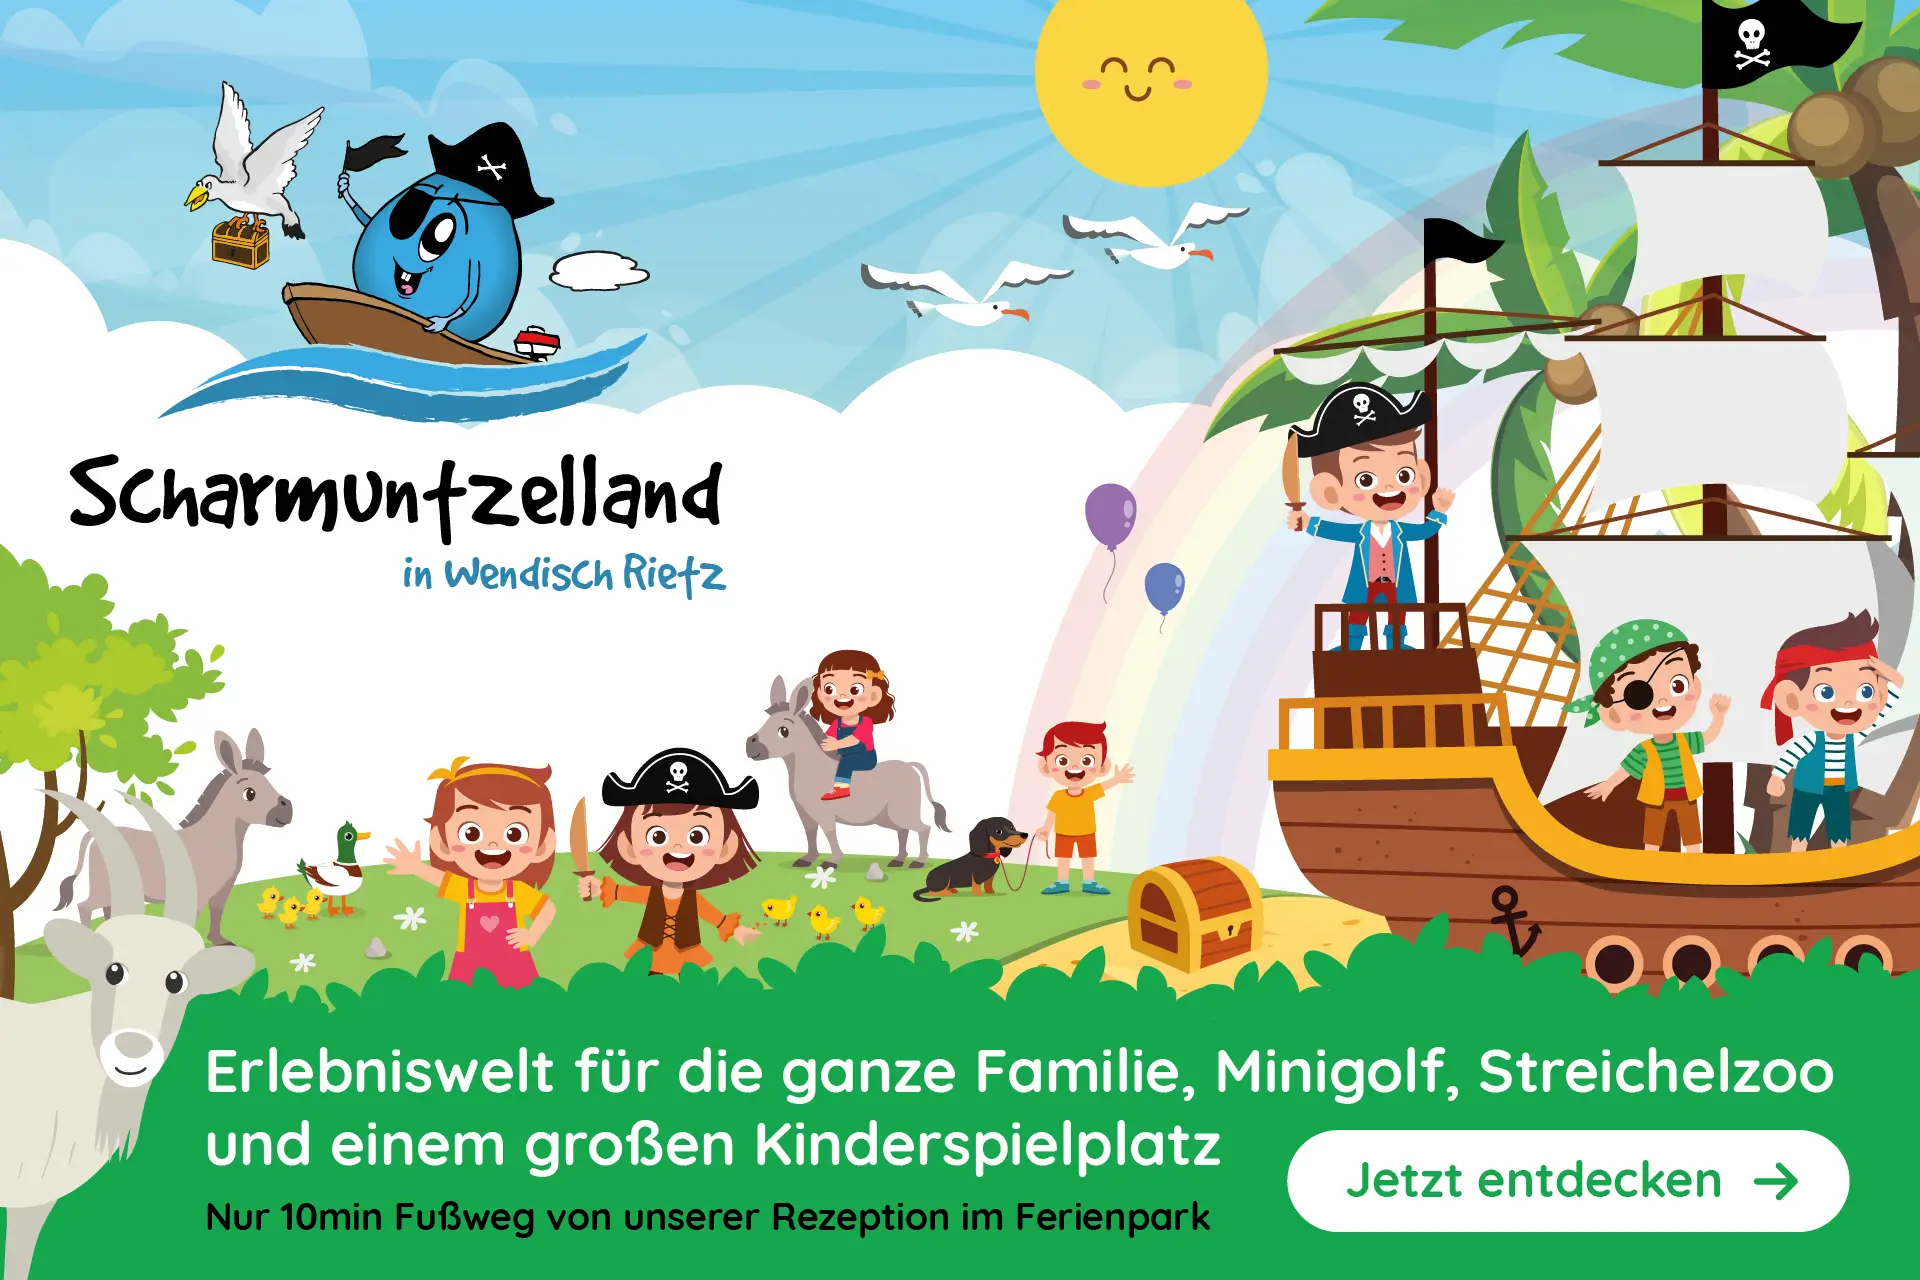 Scharmuntzelland, der Familien- und Erlebnispark in Wendisch Rietz mit Minigolf, Streichelzoo und großem Kinderspielplatz